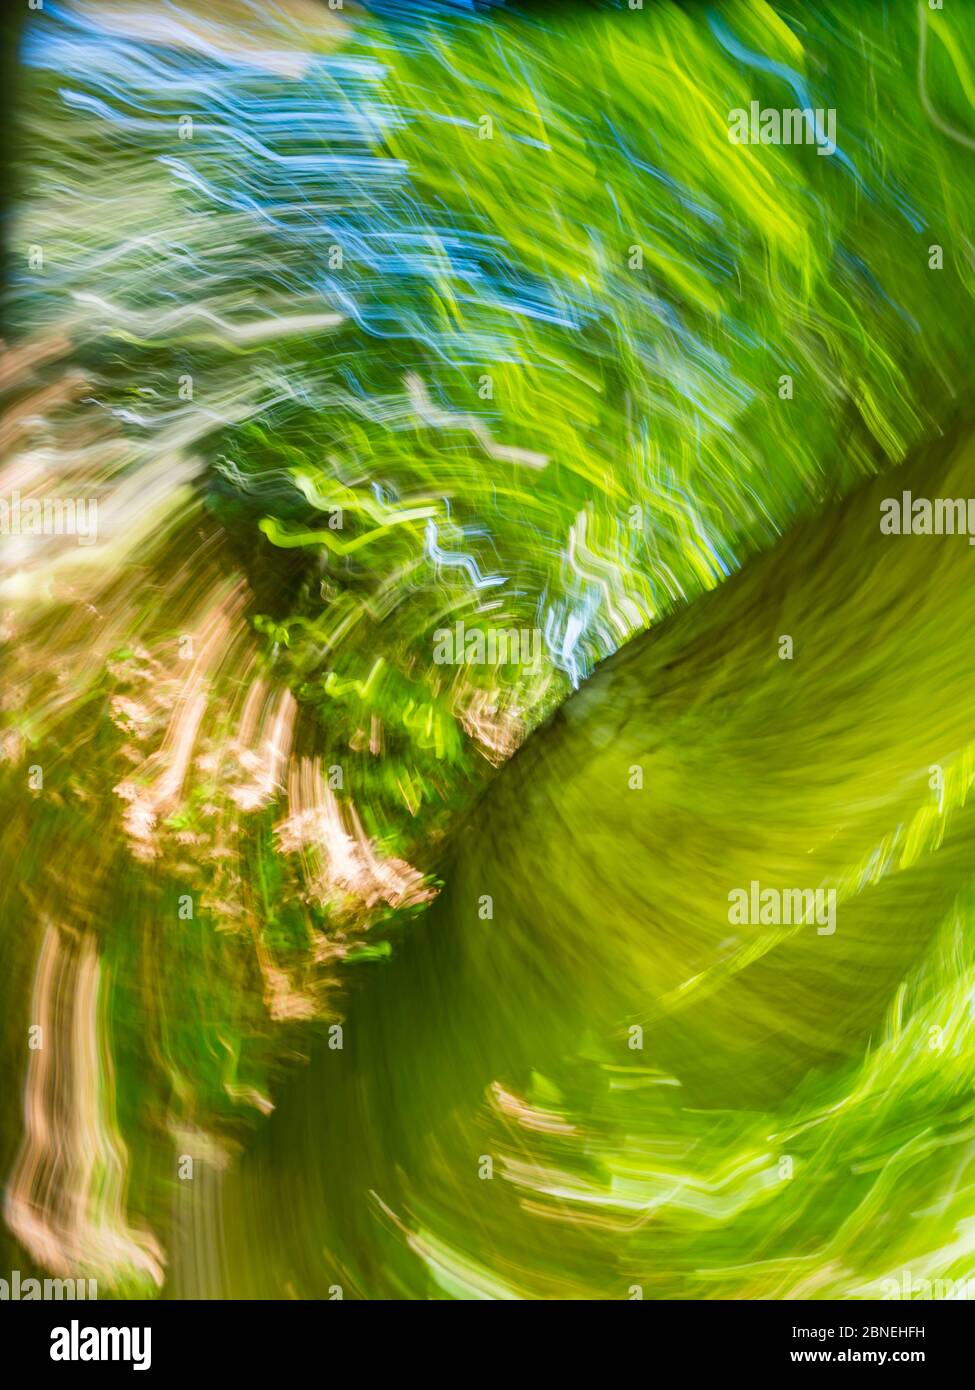 Bosque verde que crea vértigo intencionalmente borroso que representa la máxima velocidad circular rápido movimiento Foto de stock